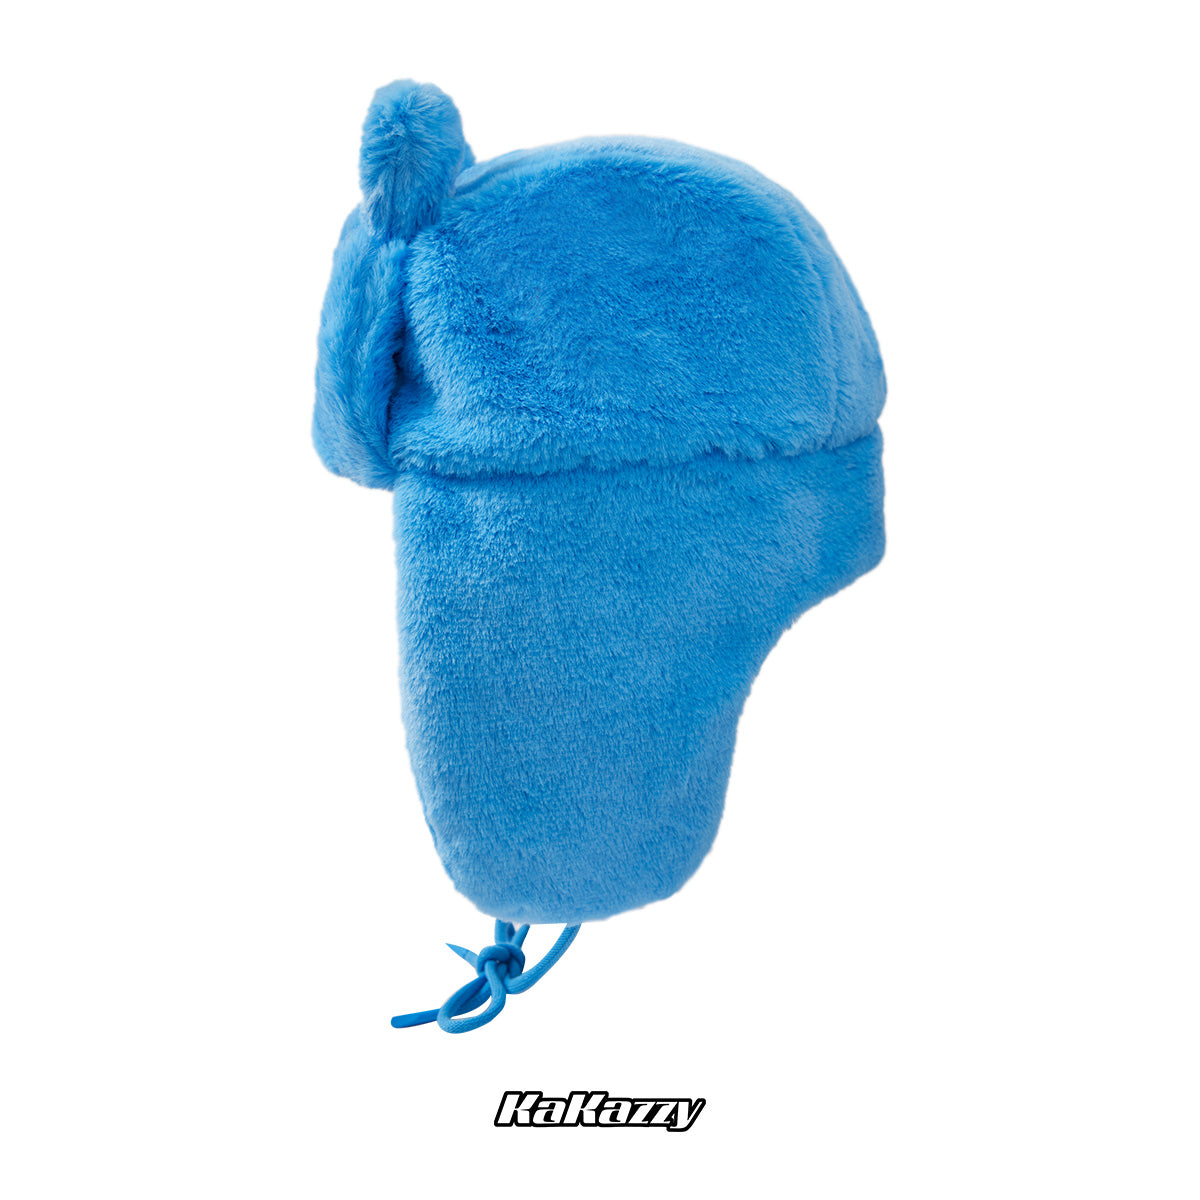 Kakazzy Ushanka Hat Blue